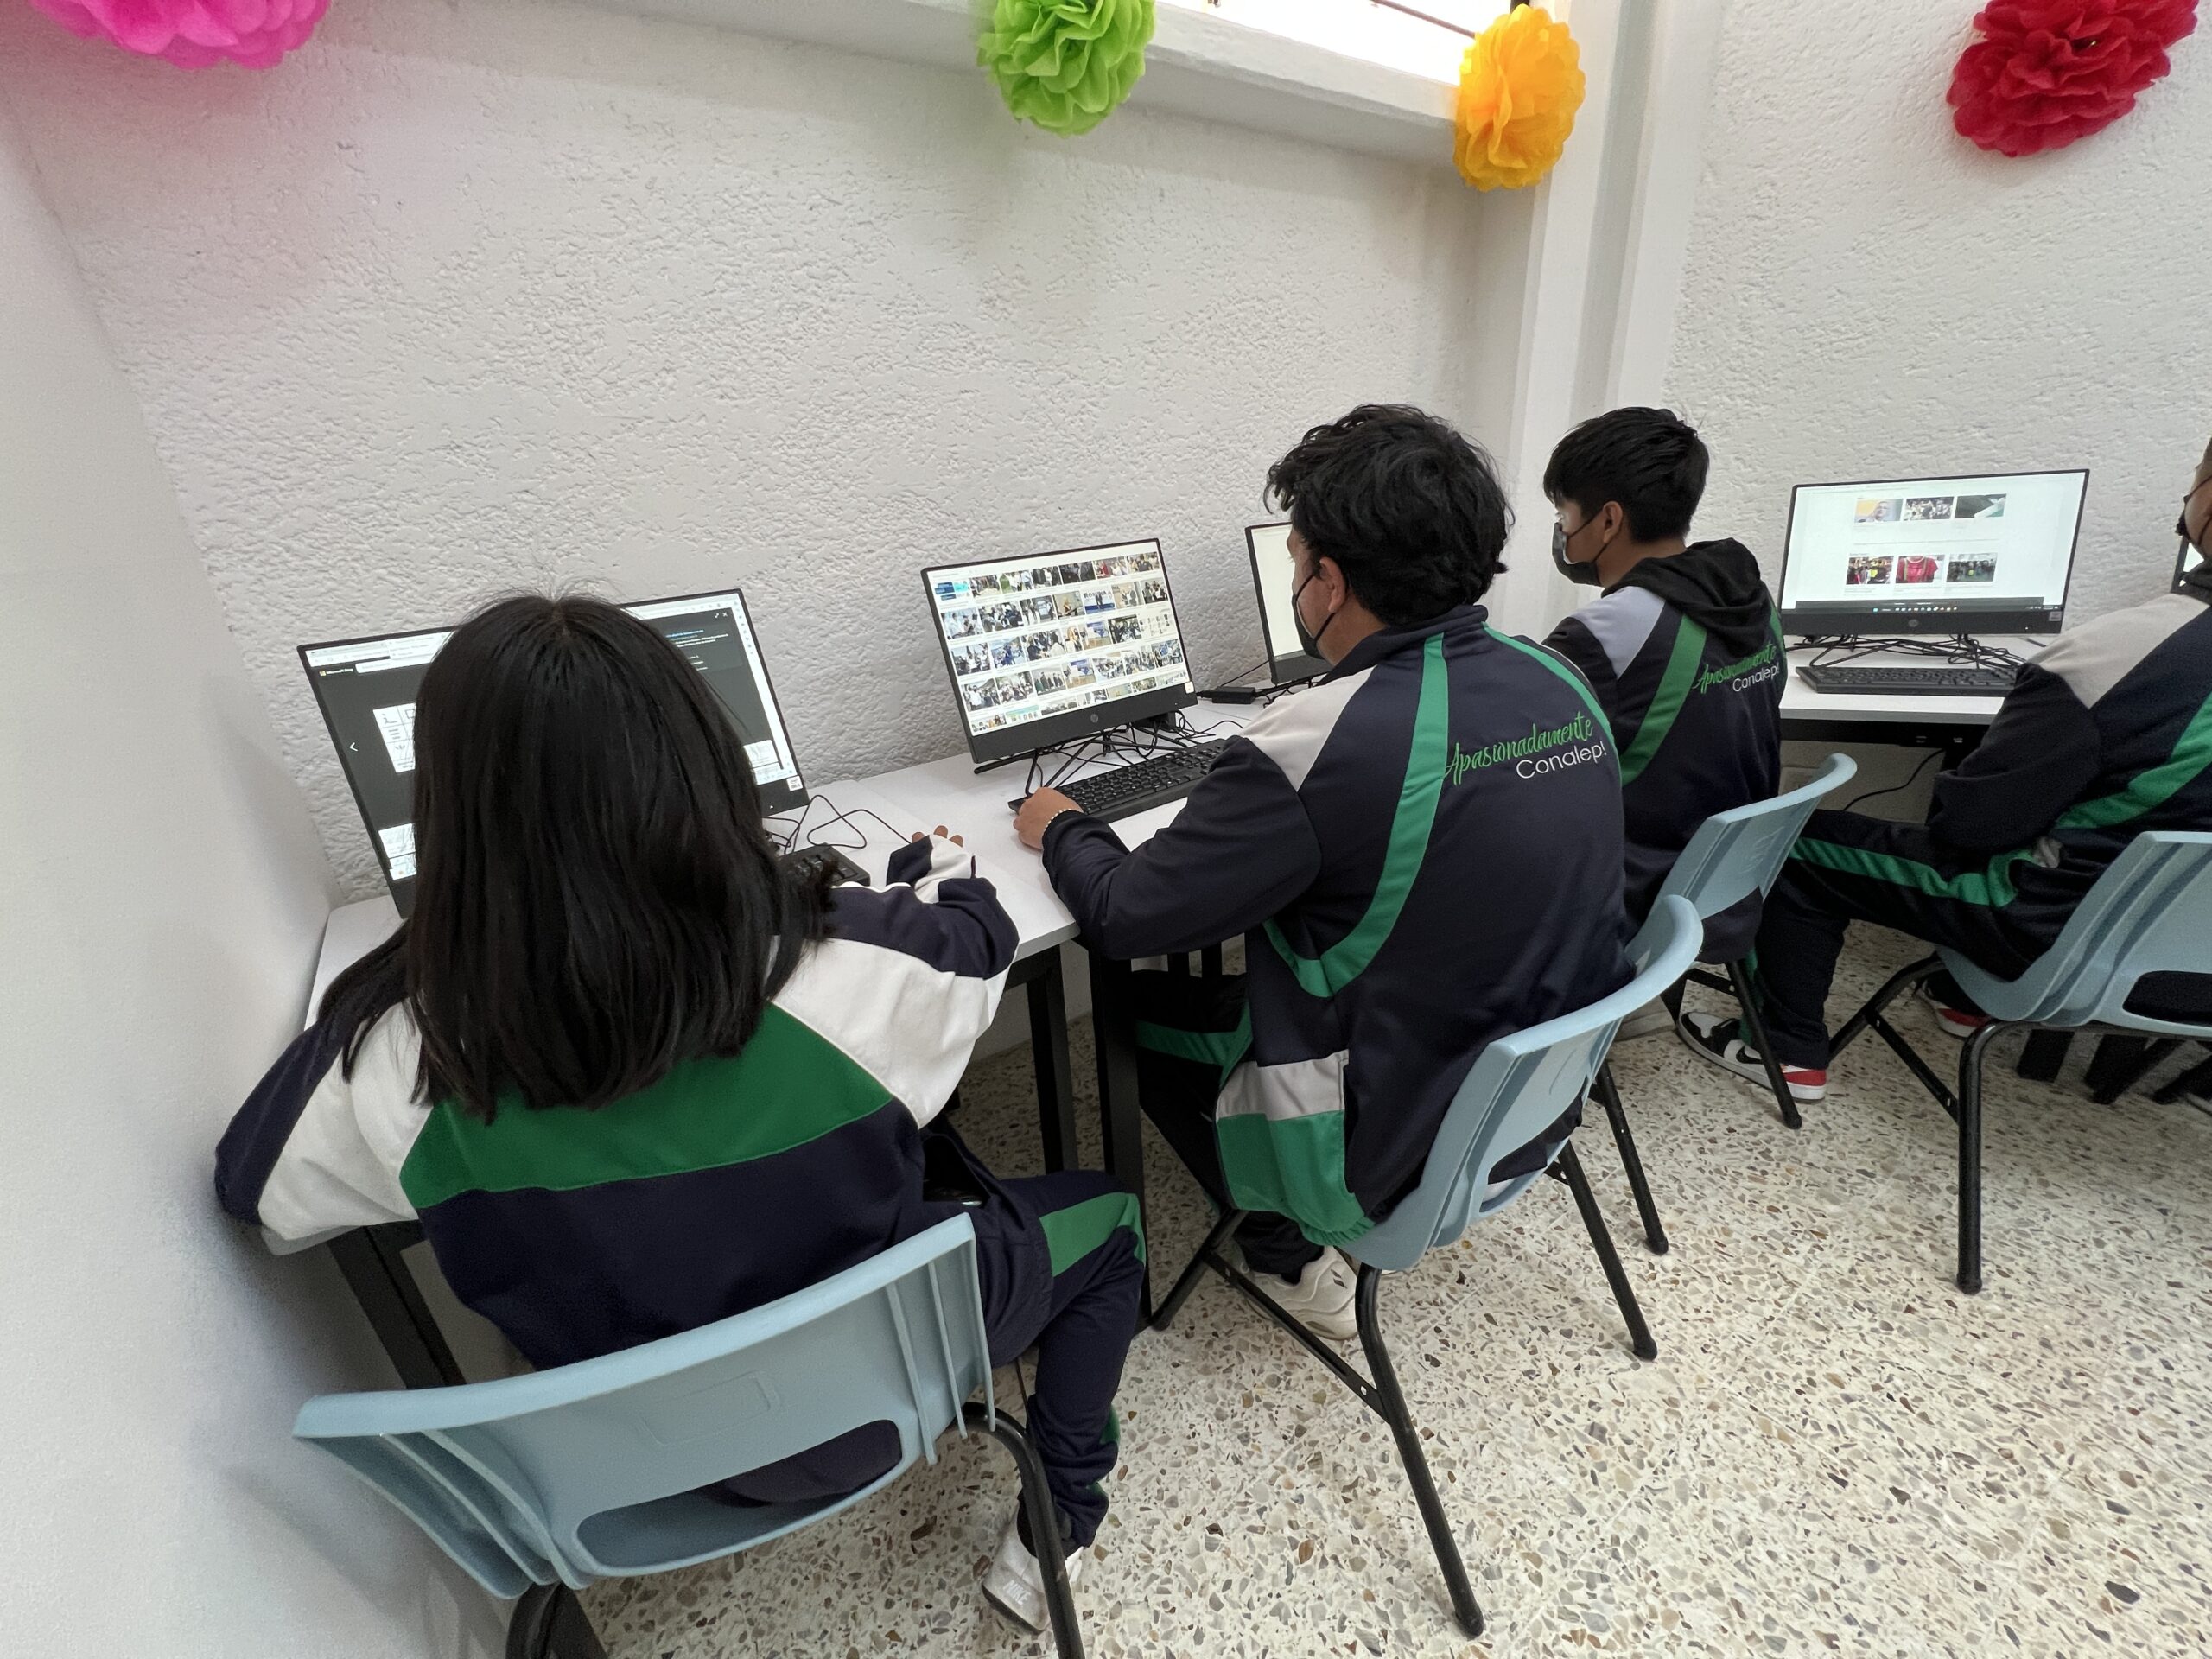 Gran ayuda para estudiantes las bibliotecas digitales de Huixquilucan